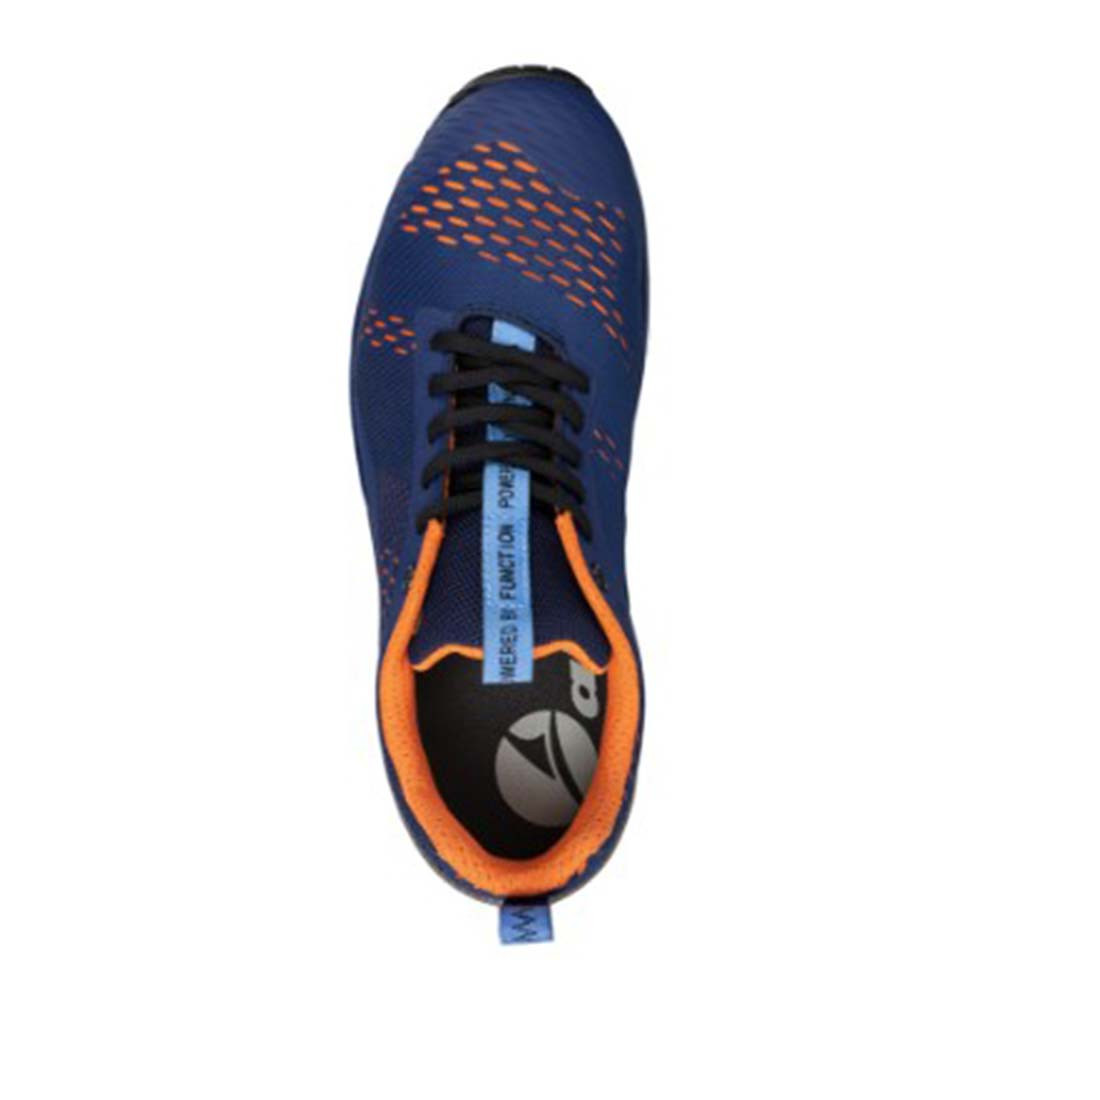 Pantofi de protectie S1P AER55 IMPULSE BLUE-ORANGE - Incaltaminte de protectie | Bocanci, Pantofi, Sandale, Cizme